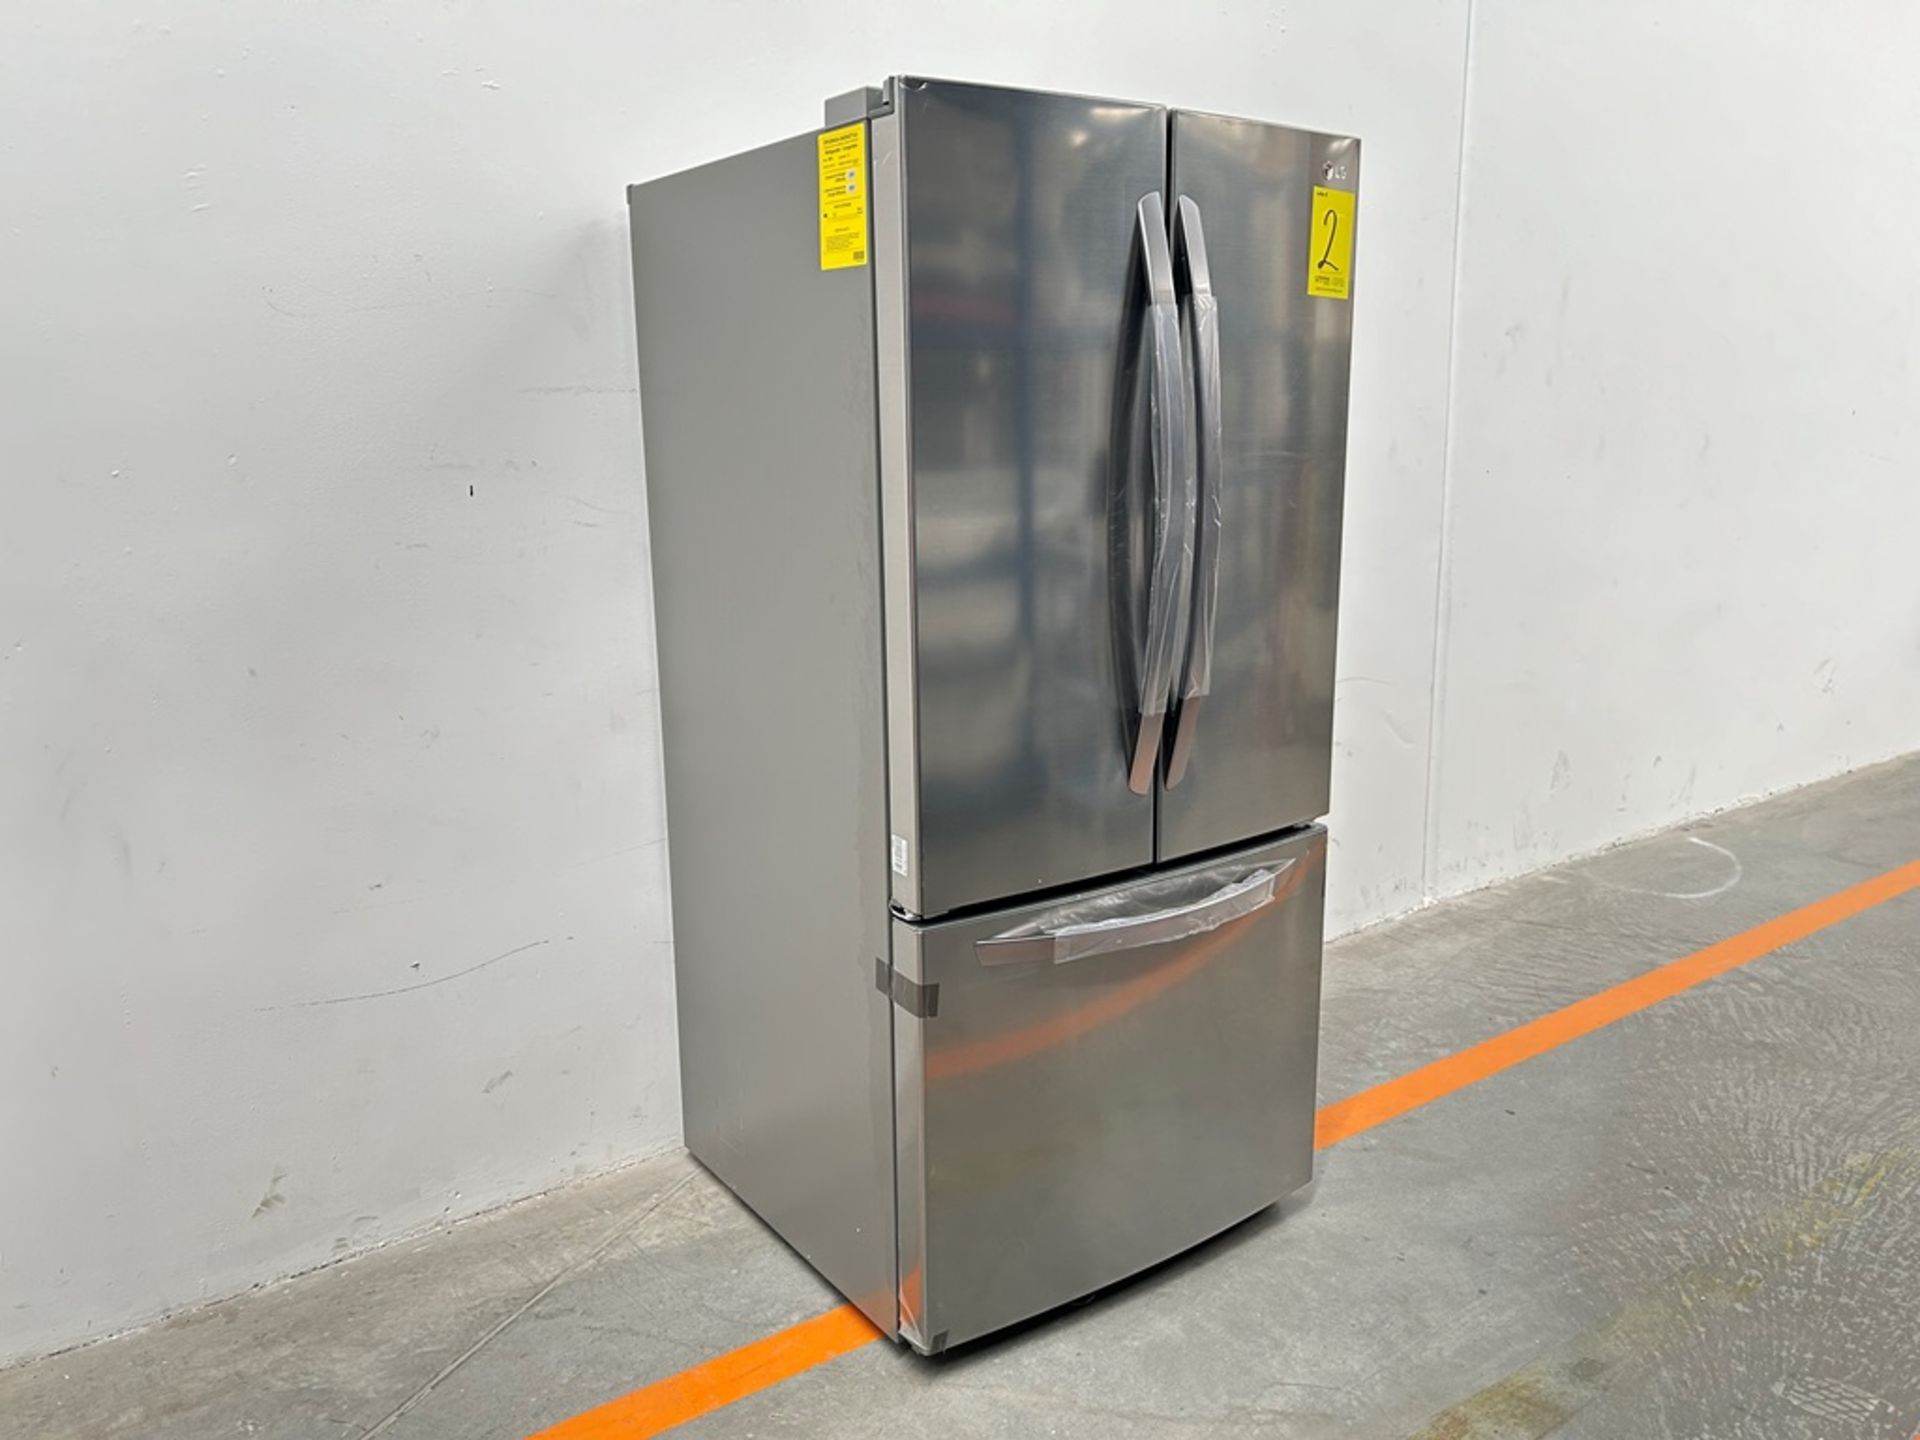 (NUEVO) Refrigerador Marca LG, Modelo GM65BGSK, Serie Z30098, Color GRIS - Image 3 of 11